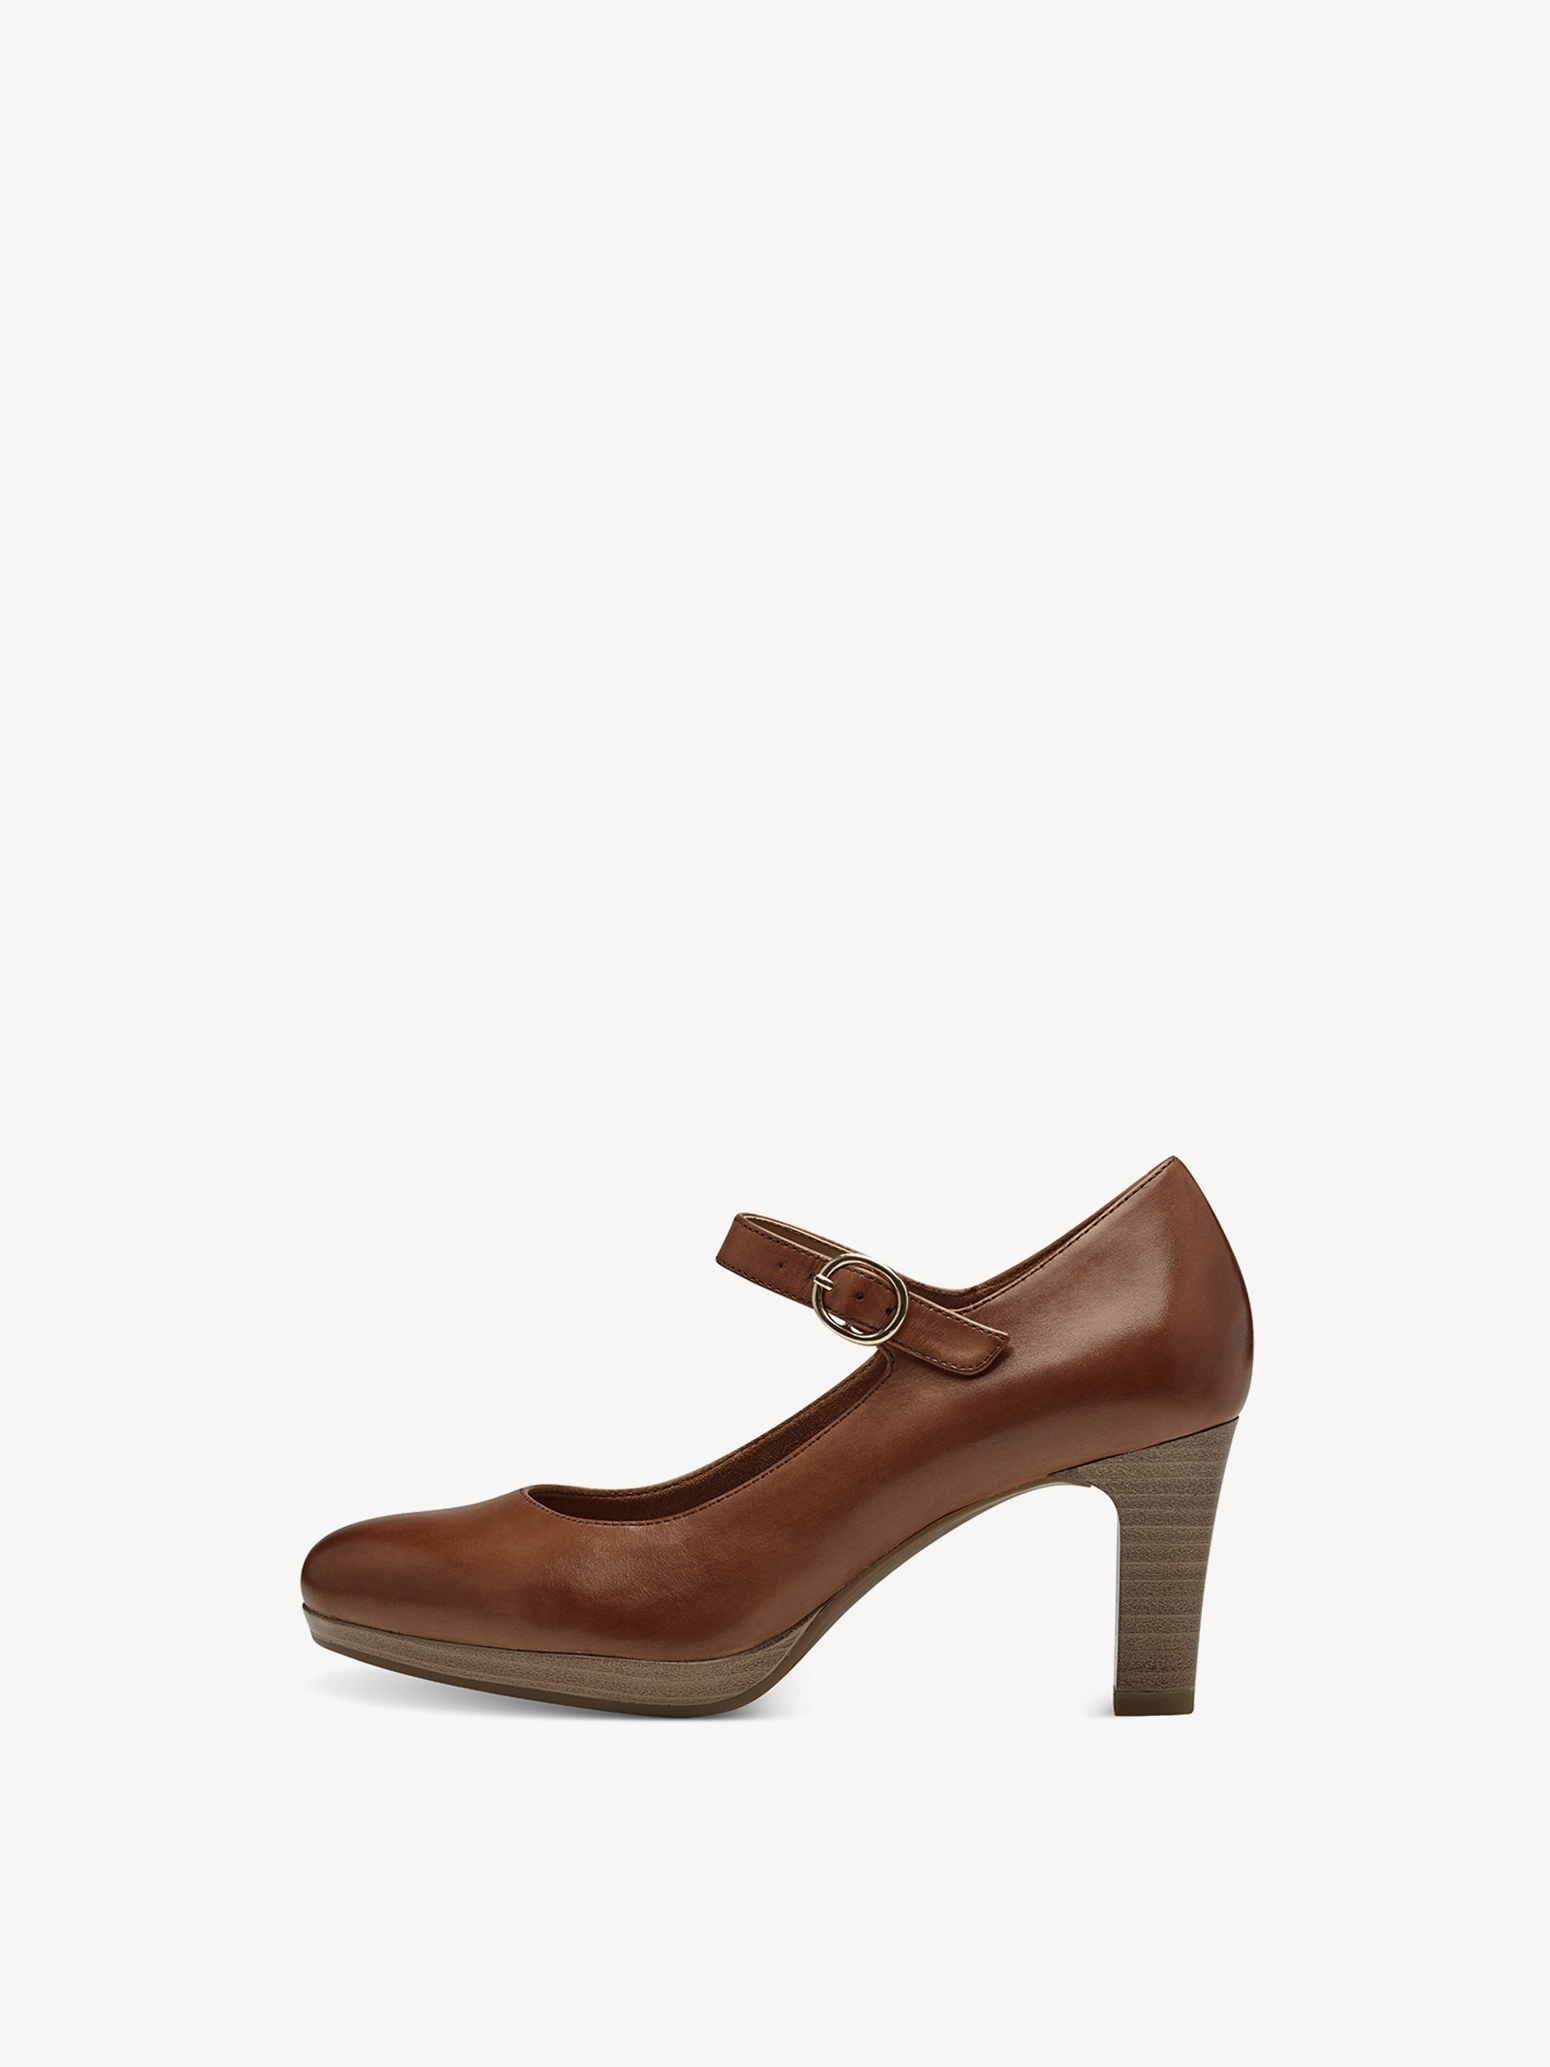 Туфли женские Tamaris 1-22490-42-311 коричневые 39 RU